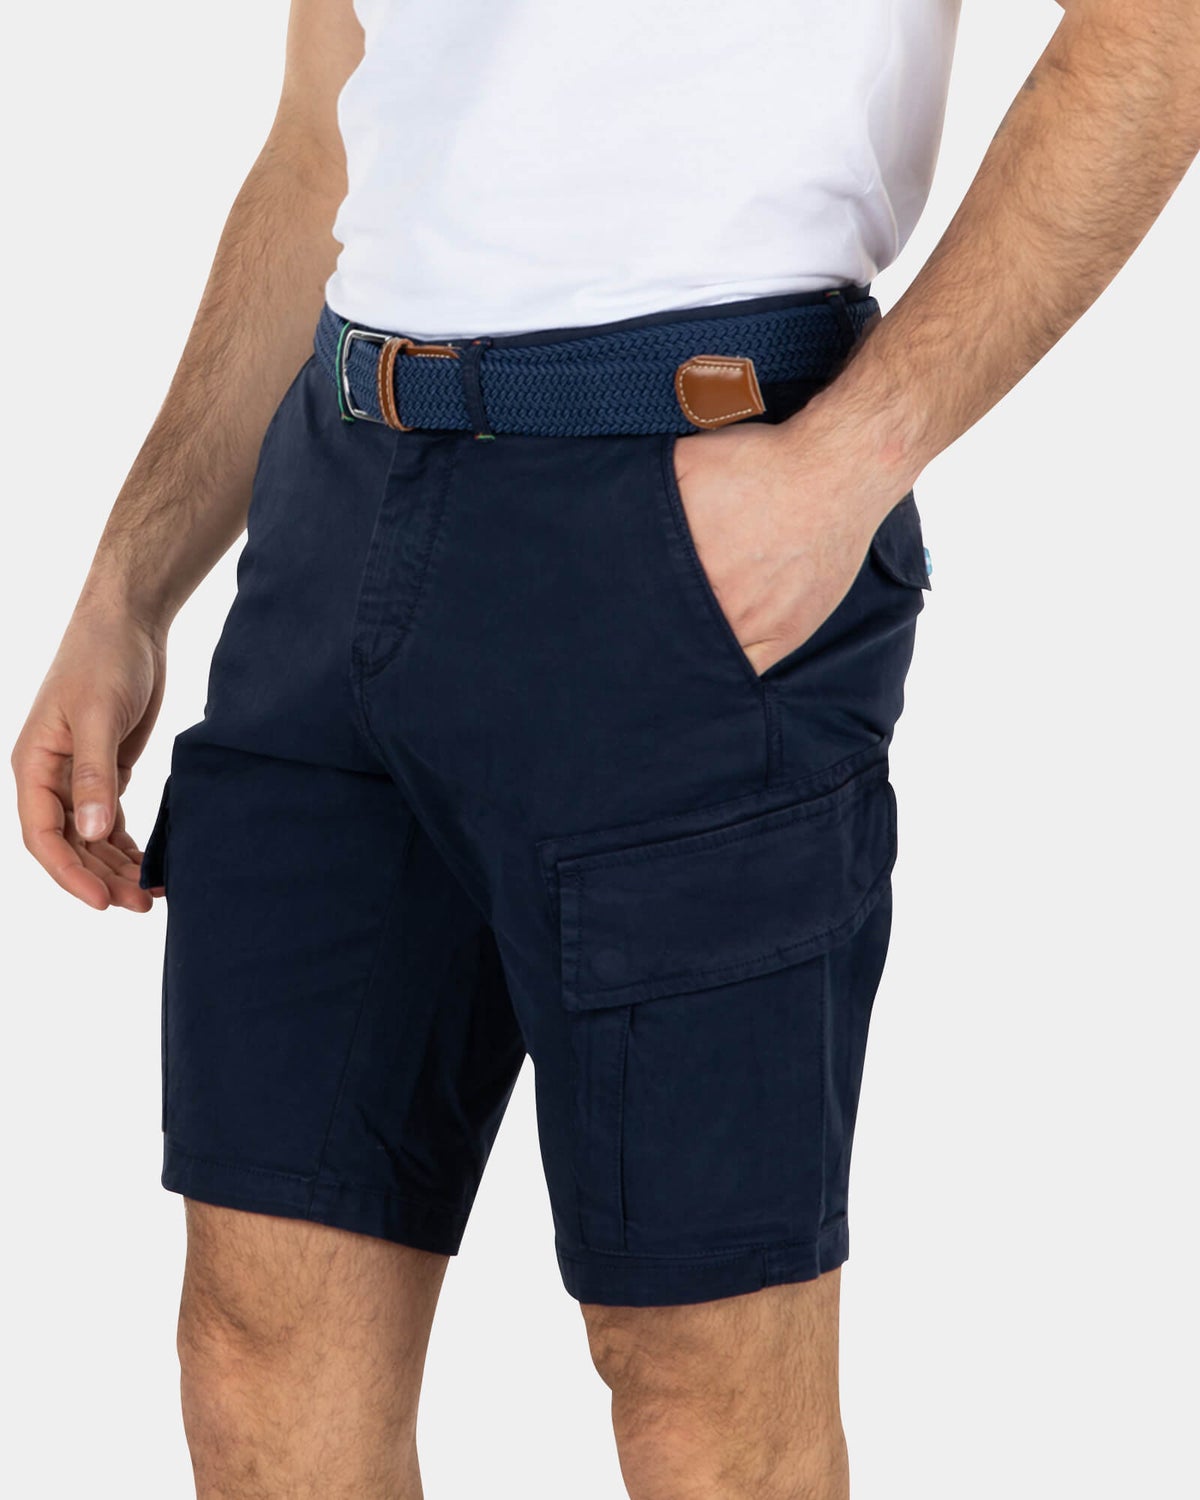 Cotton stretch cargo shorts - Key Navy